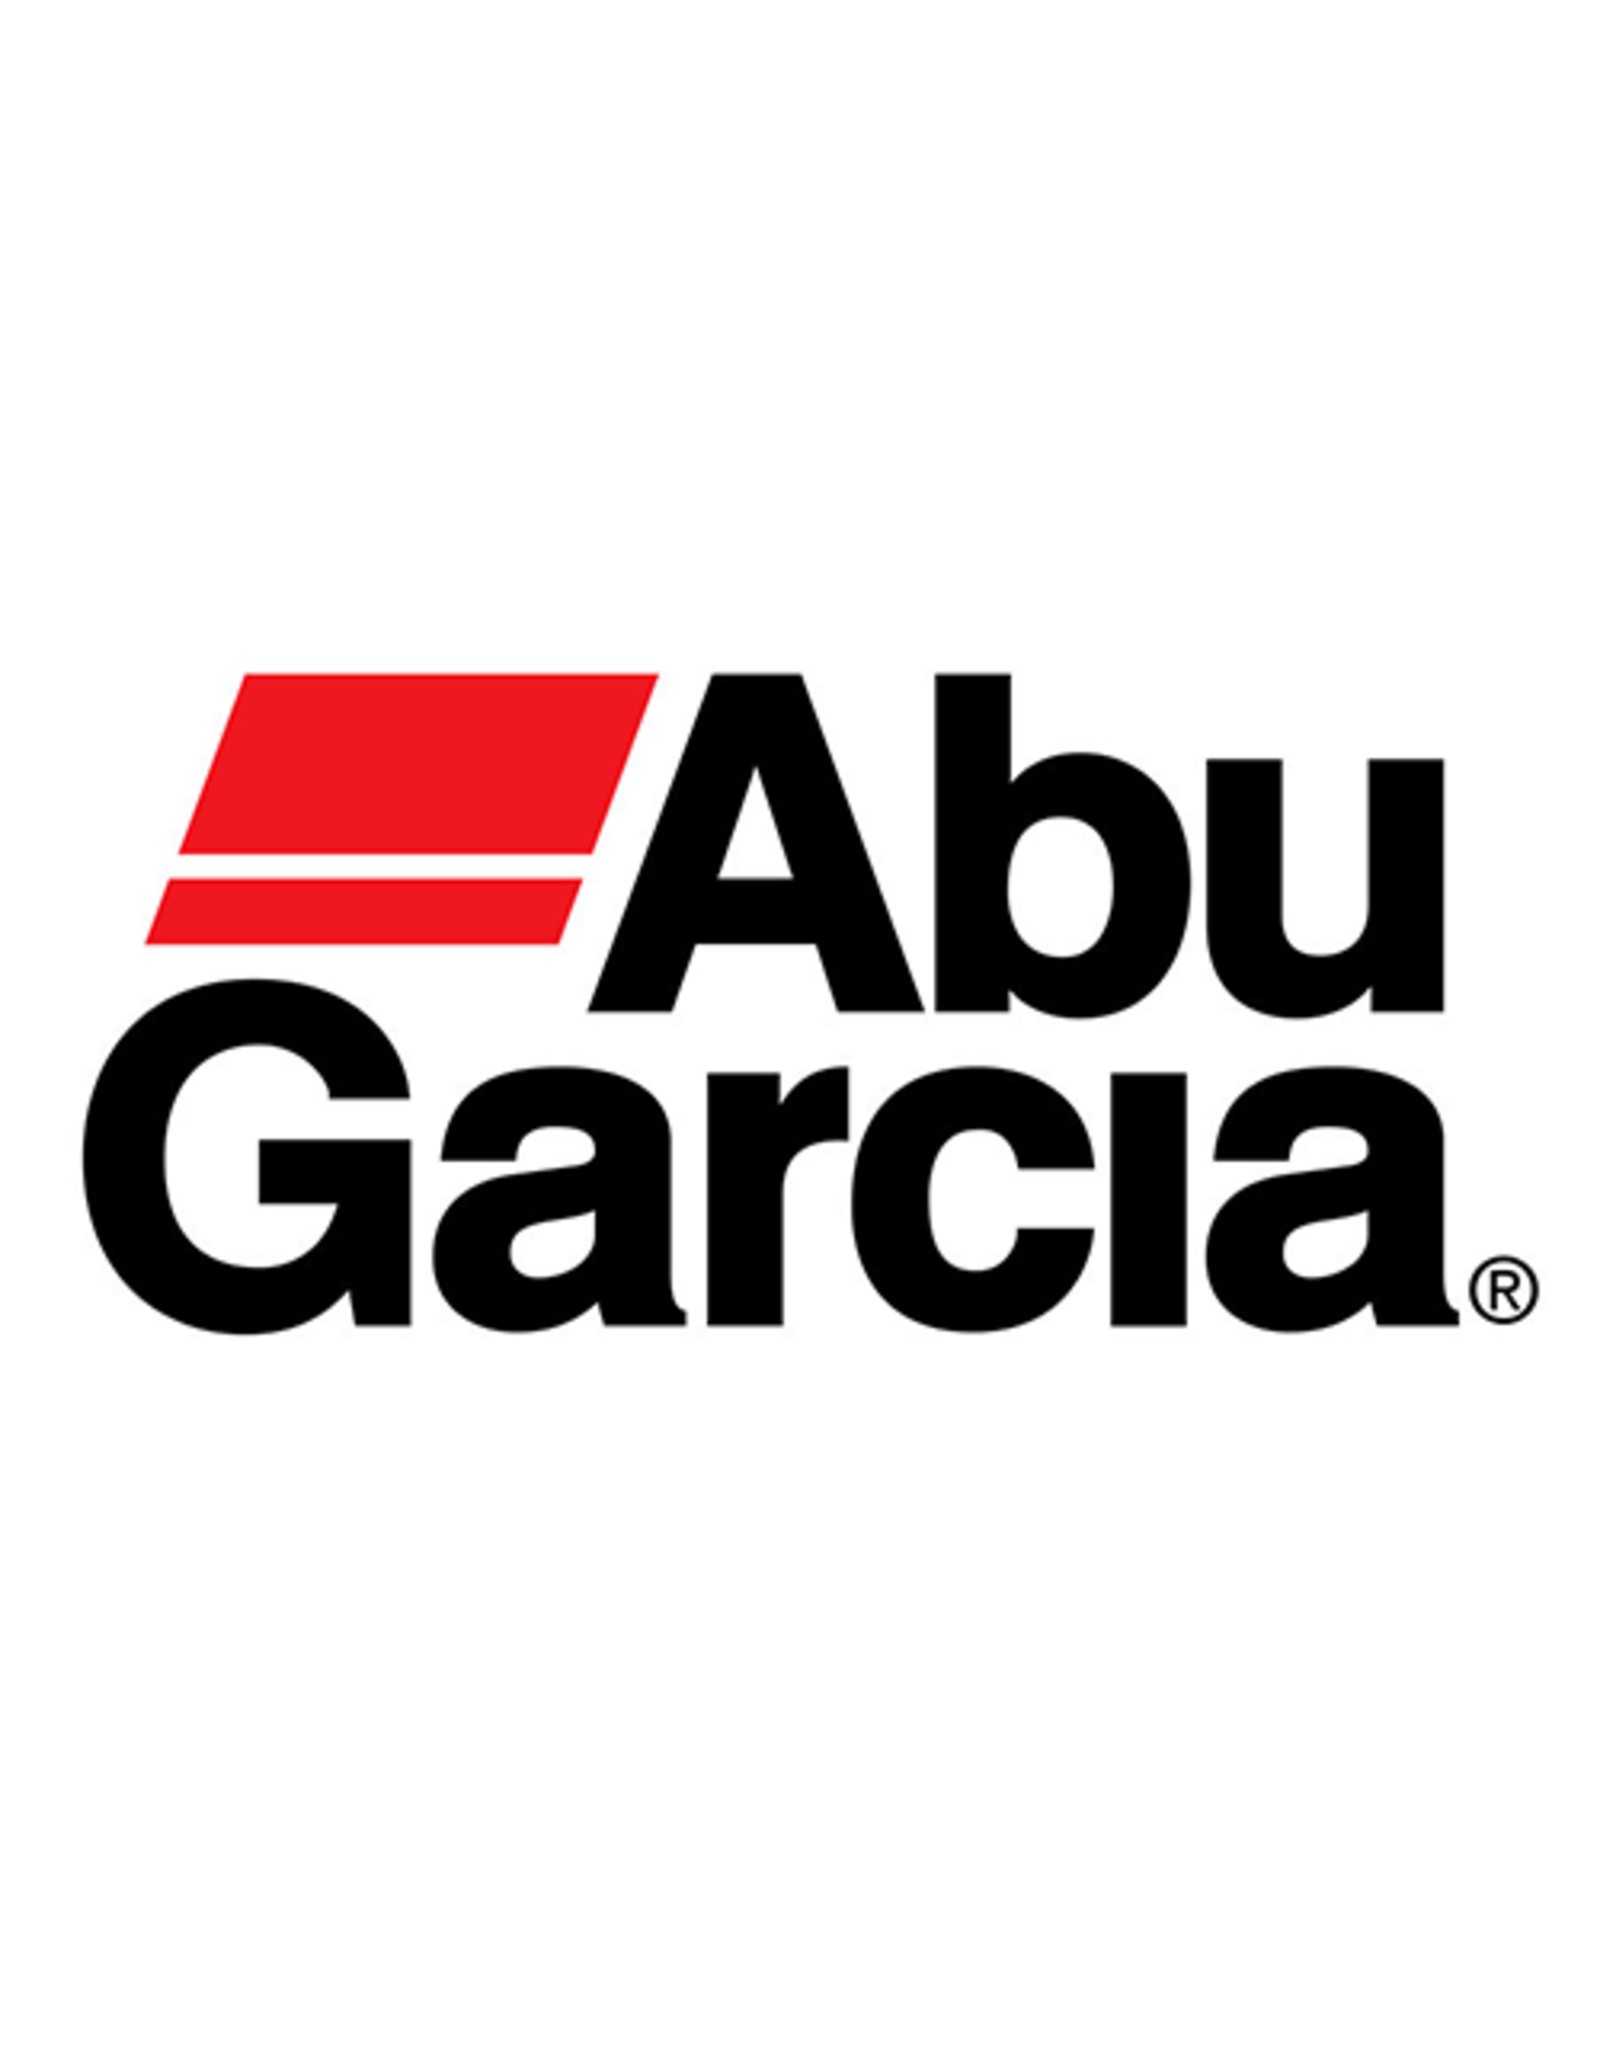 Abu Garcia 9915  DRIVE GEAR & CLICK SPRING/NLA